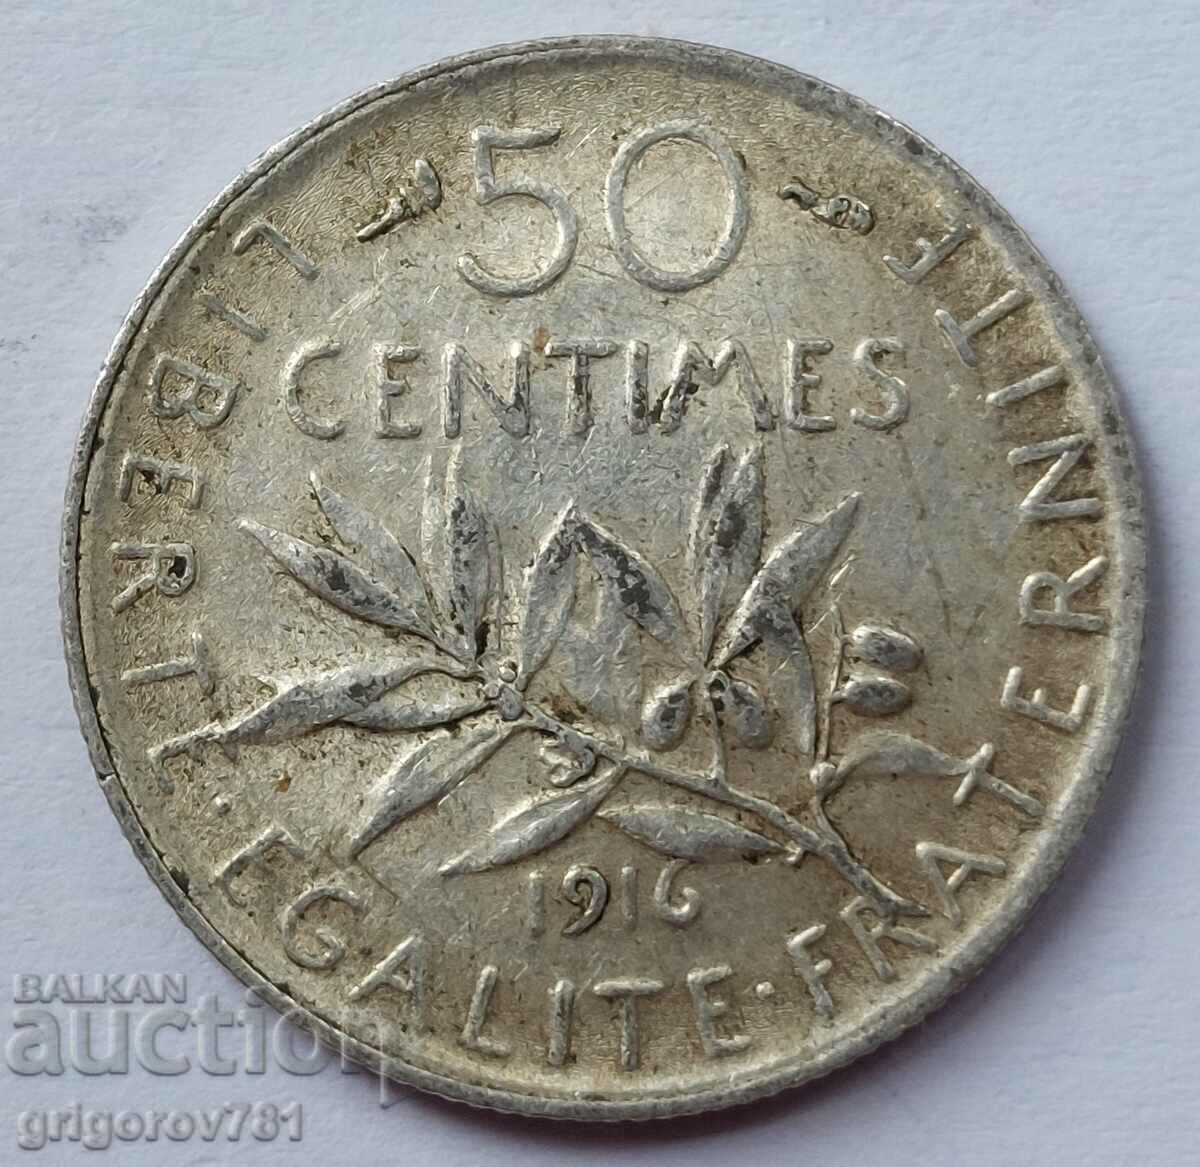 Ασημένιο 50 εκατοστά Γαλλία 1916 - ασημένιο νόμισμα №59